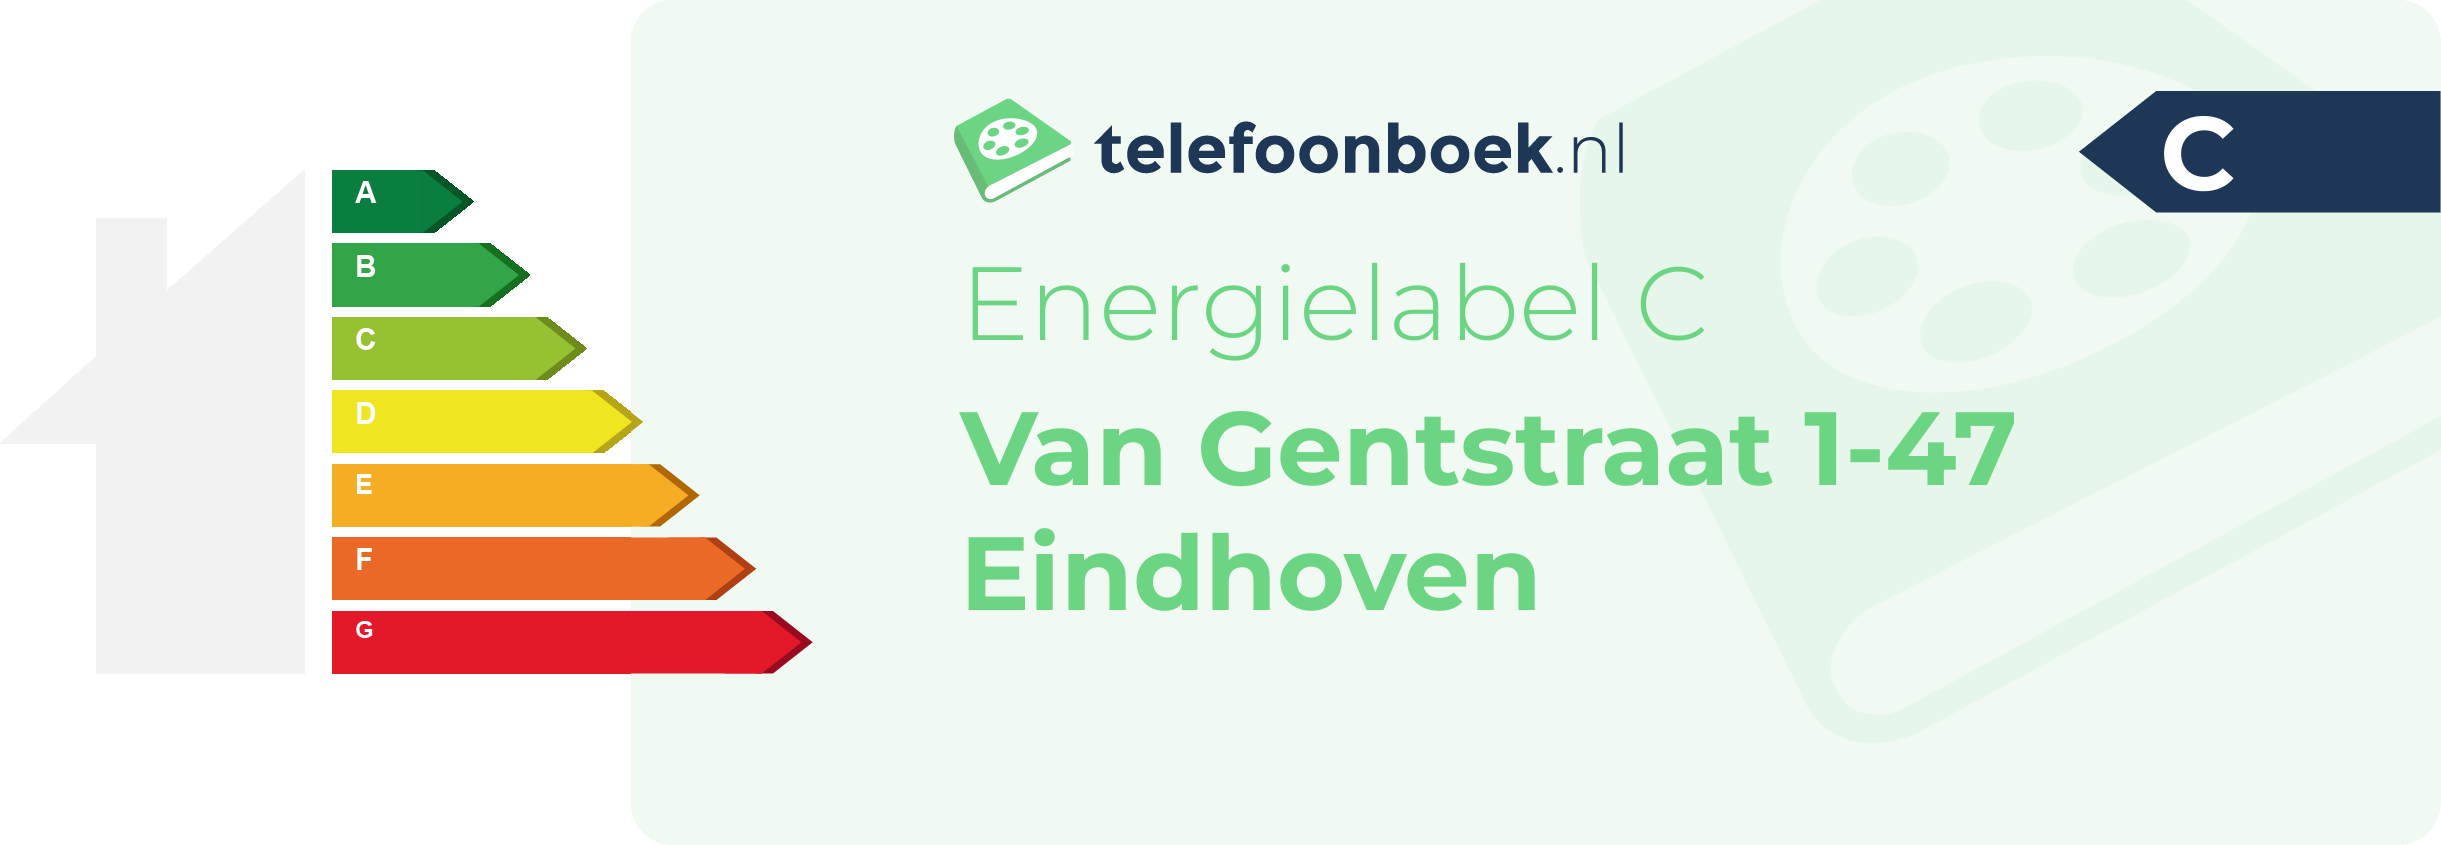 Energielabel Van Gentstraat 1-47 Eindhoven